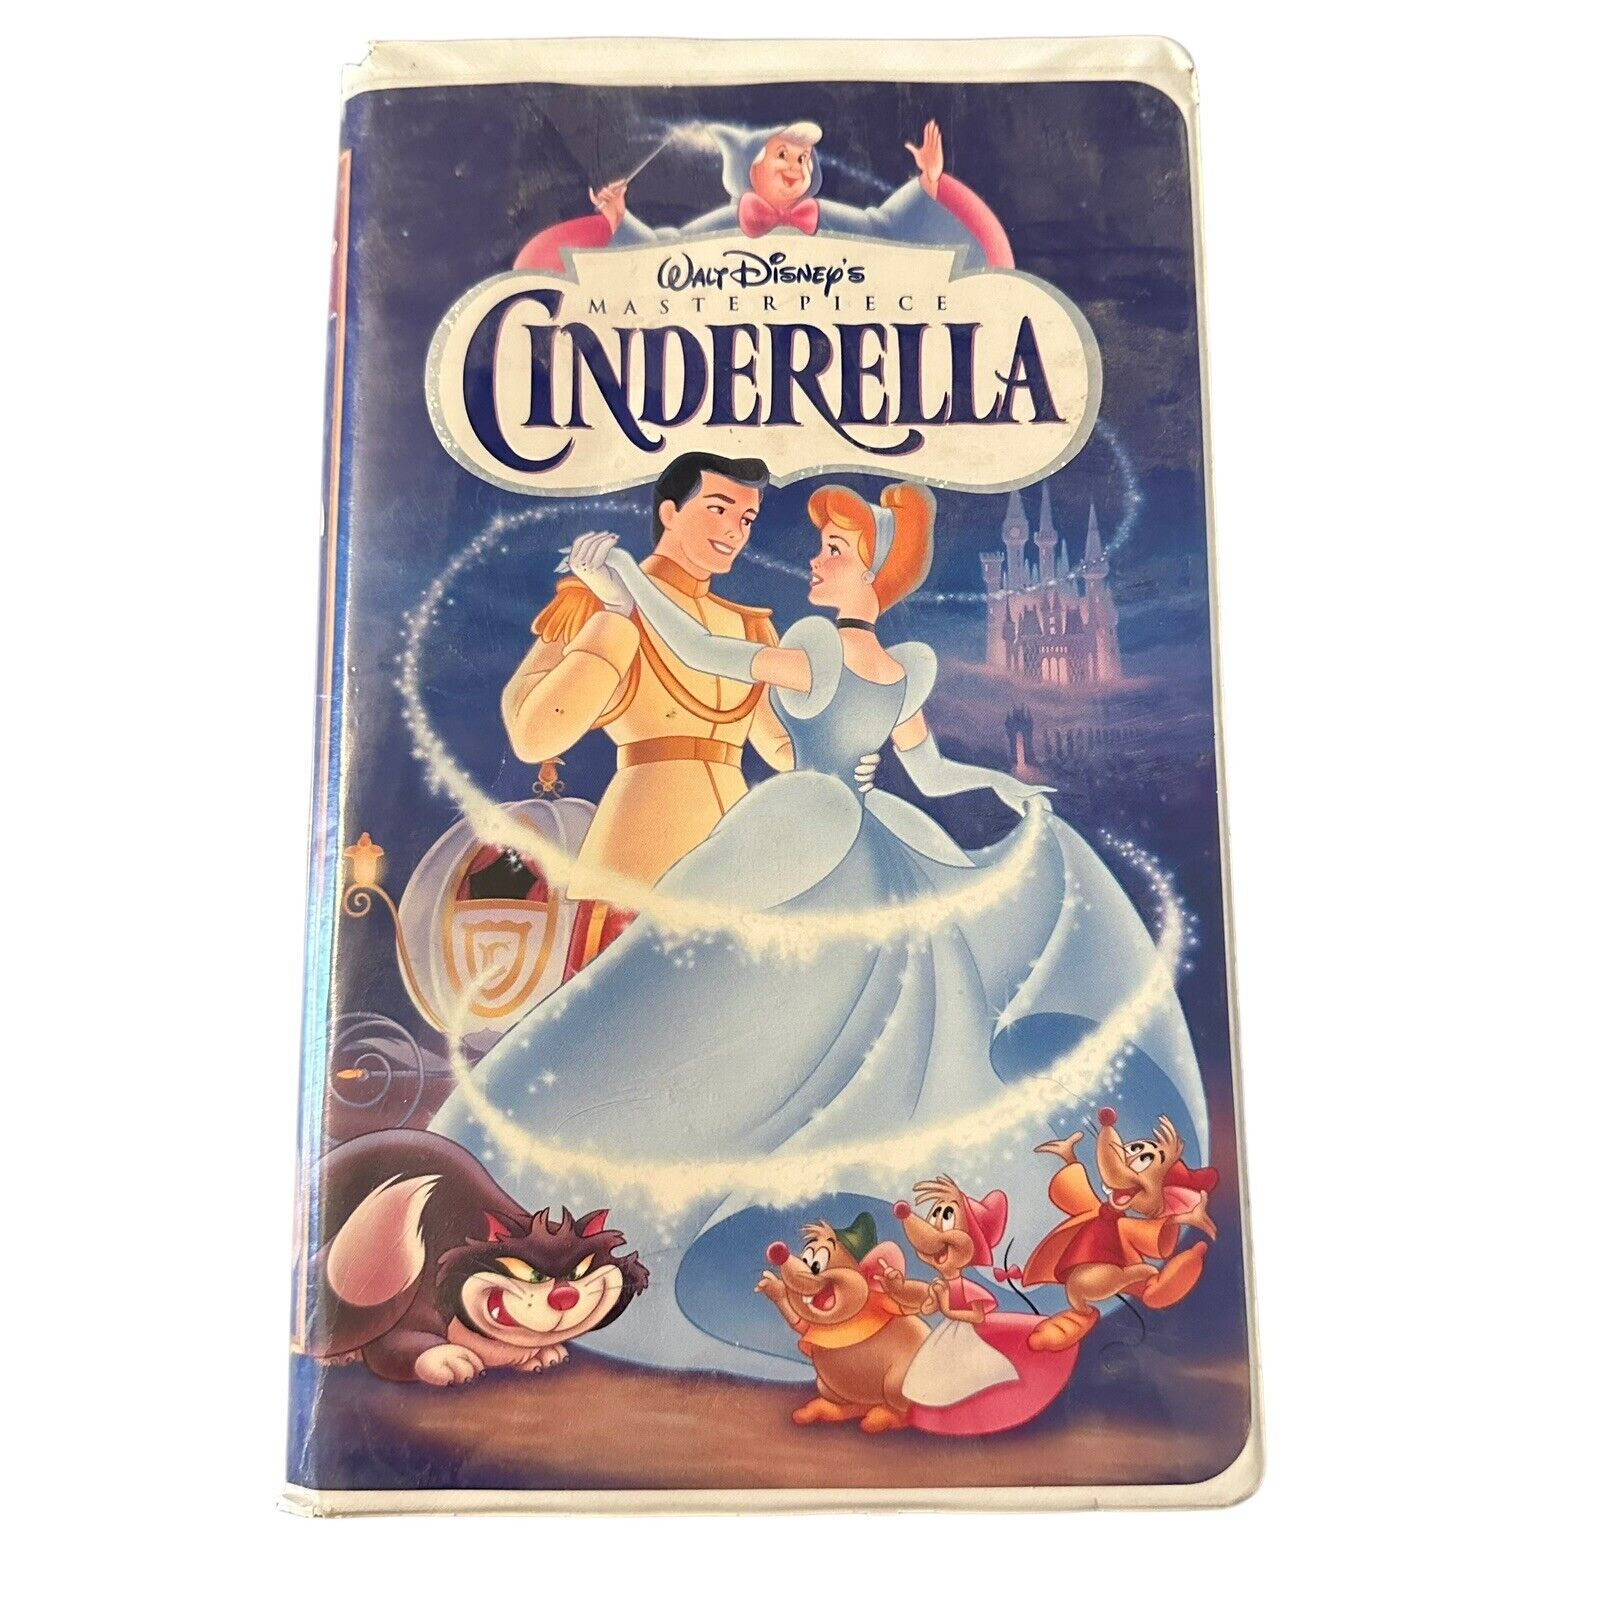 Cinderella Walt Disney Masterpiece Collection VHS 5265